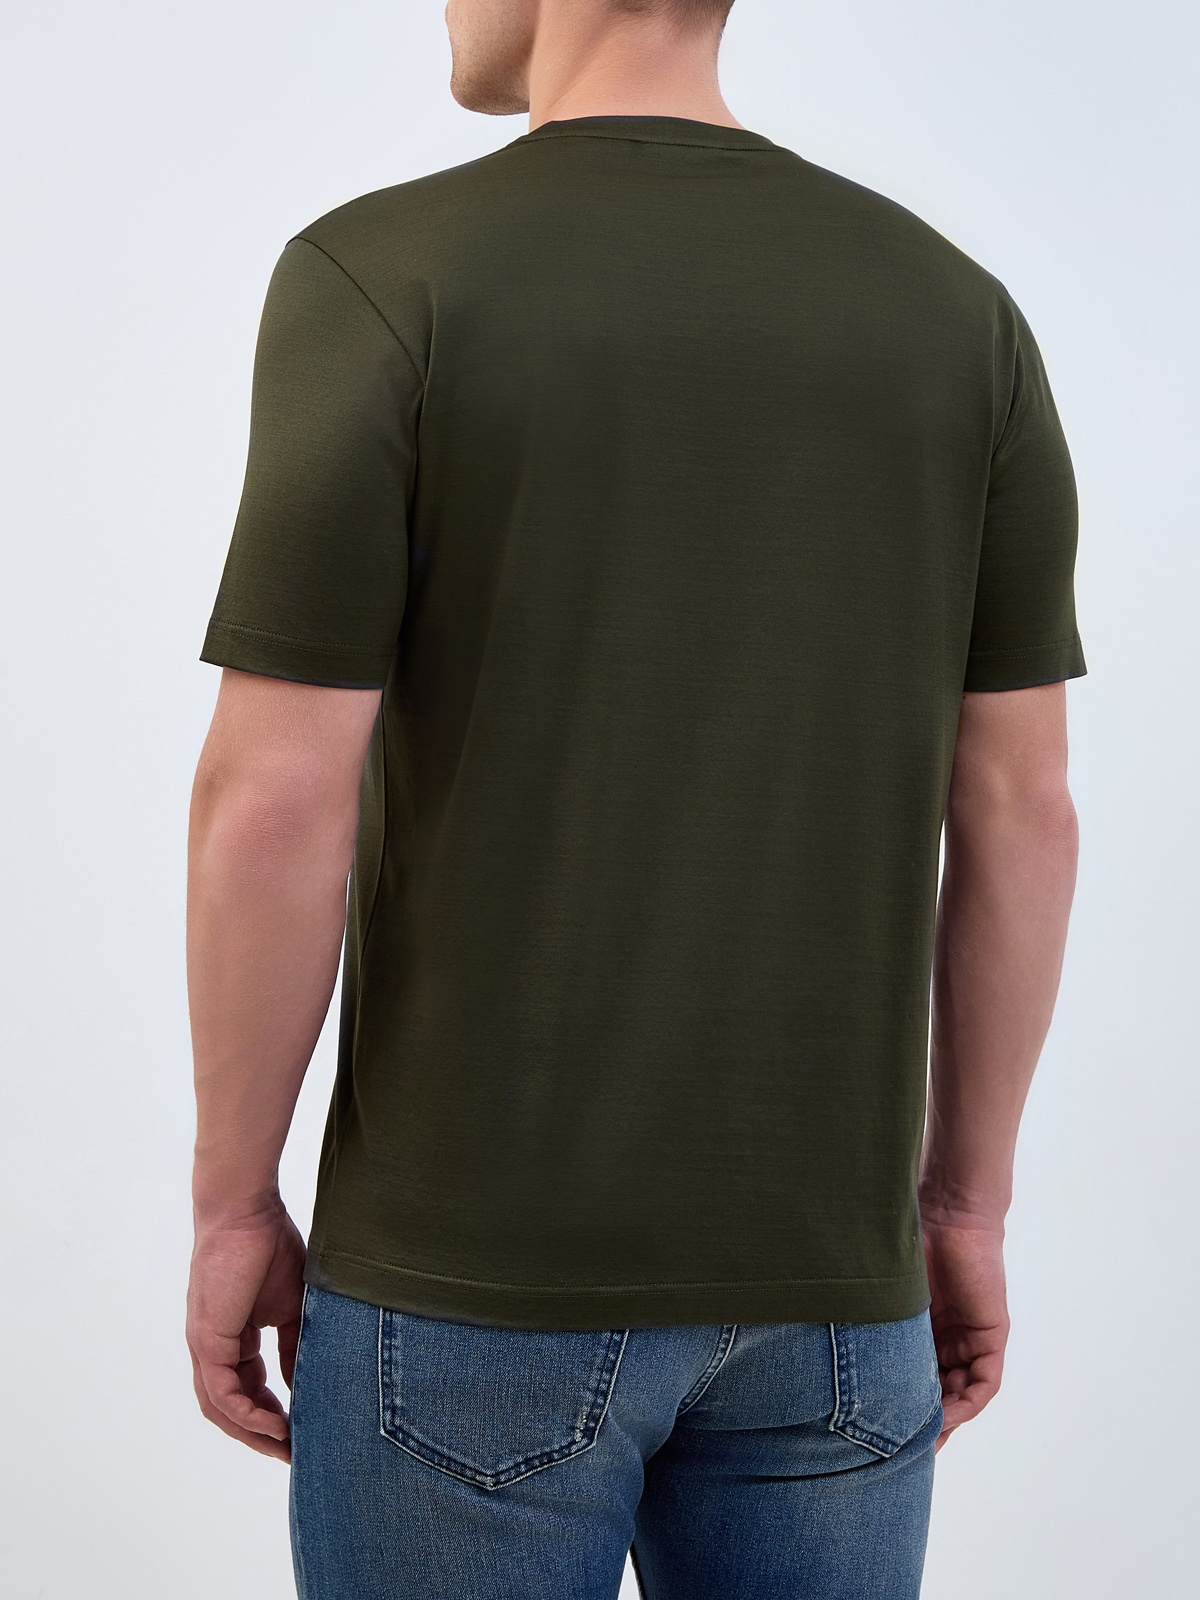 Хлопковая футболка из гладкого джерси с логотипом в тон BERTOLO, цвет зеленый, размер 52;54;56;58 - фото 4